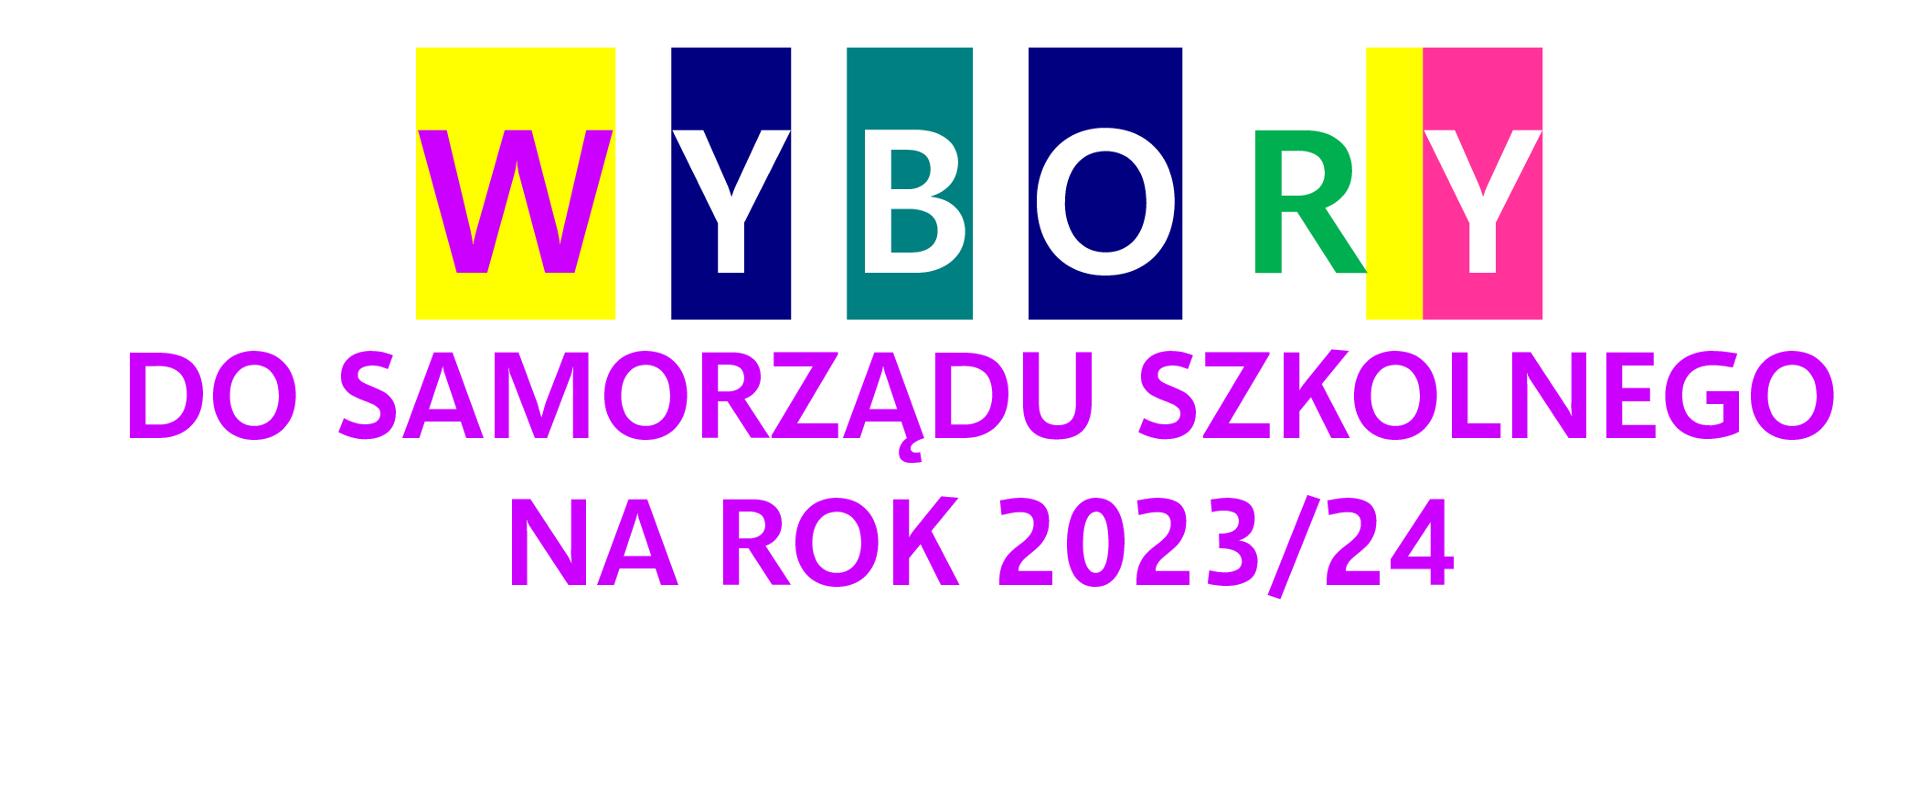 Plakat na białym tle informujący o wyborach do Samorządu Uczniowskiego, które odbędą się w dniu 19.09.2023 roku w godzinach 16:30-17:00